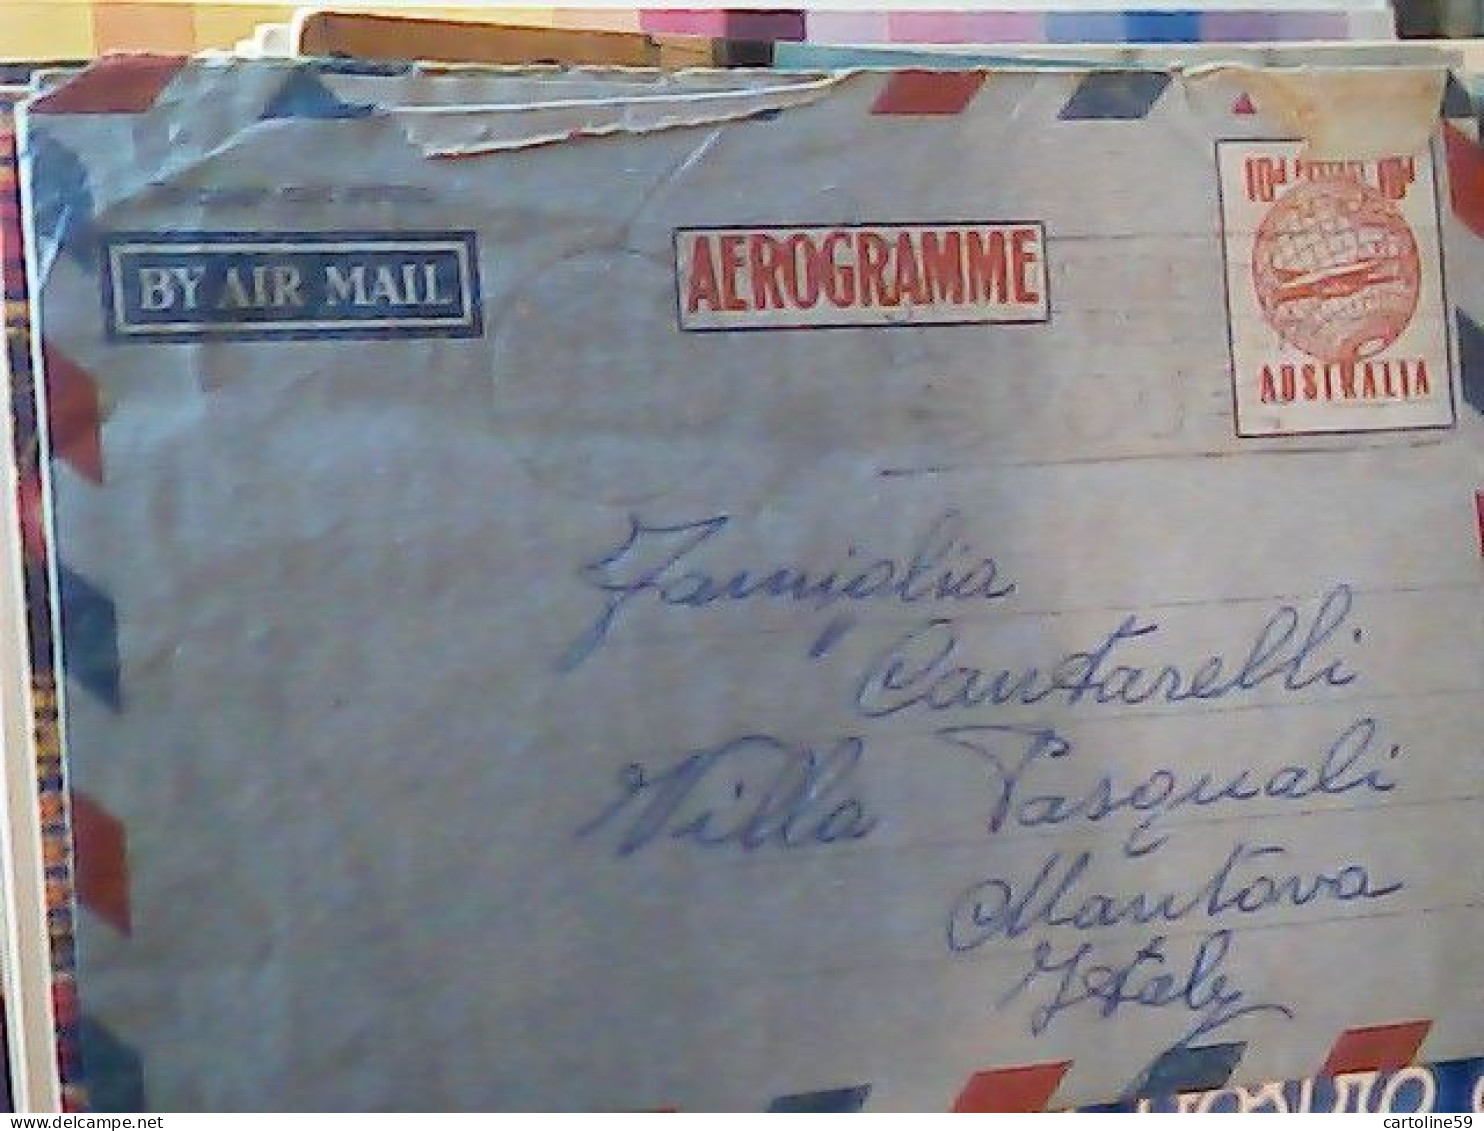 AUSTRALIA Postal History, 10d Aerogramme Stationery, Used 1959 JR4753 - Aerogrammi